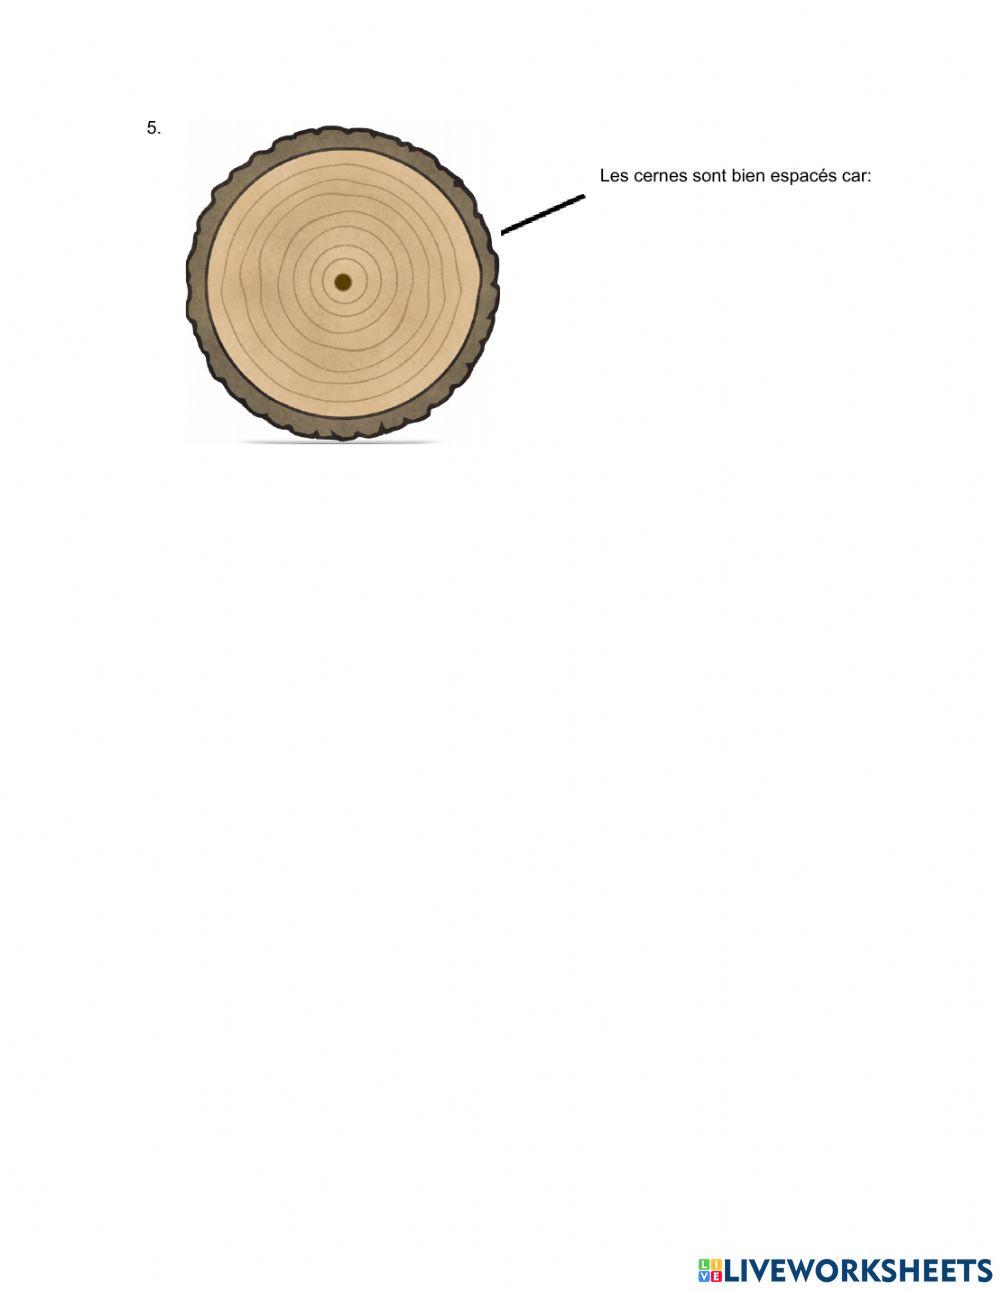 Analyser les cernes d'un arbre